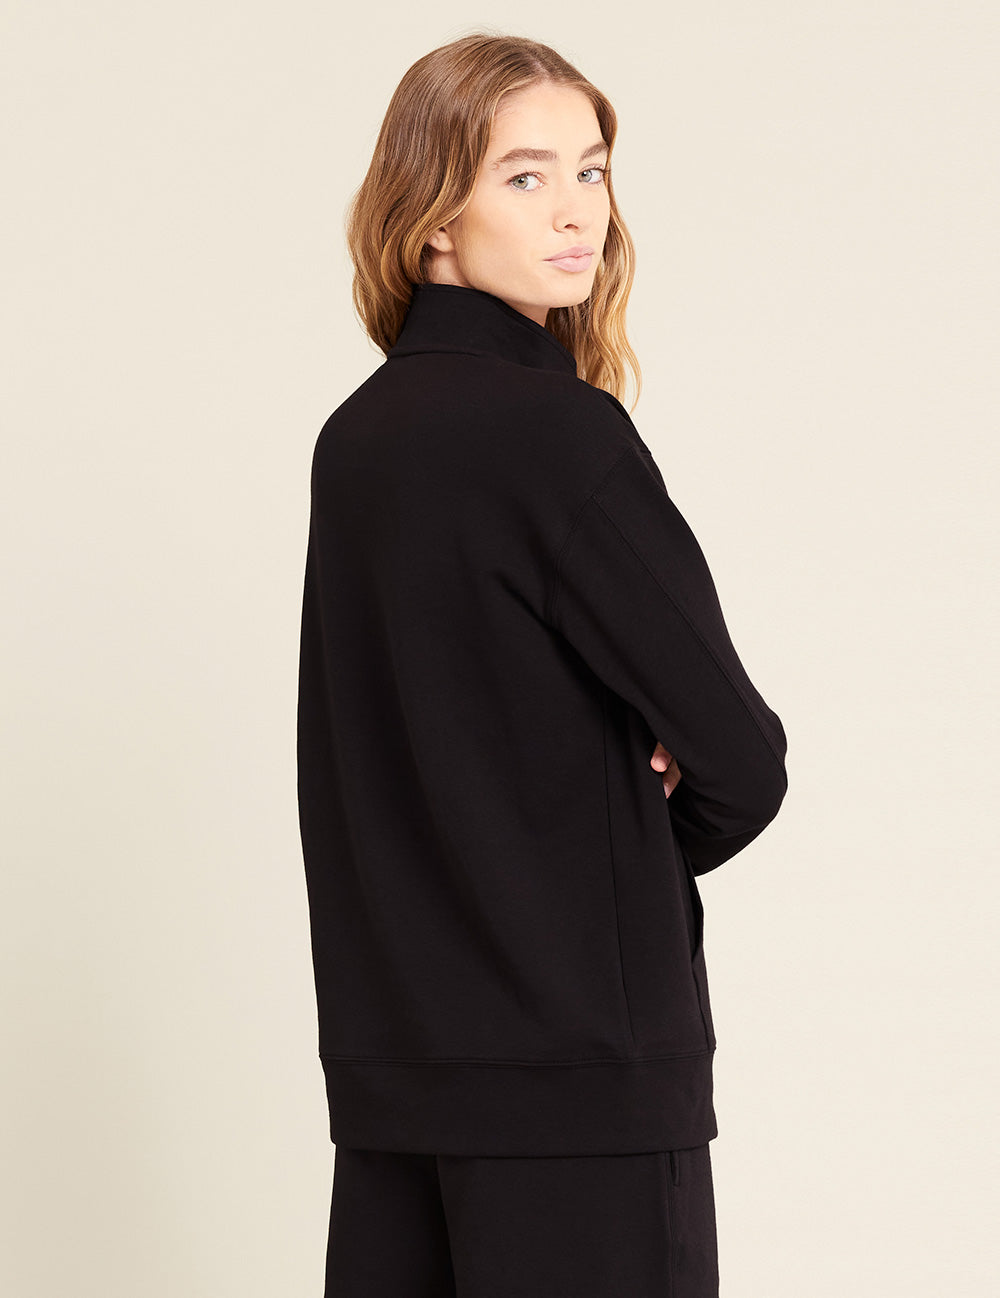 Gender-Neutral-Quarter-Zip-Sweater-Black-Female-Back.jpg